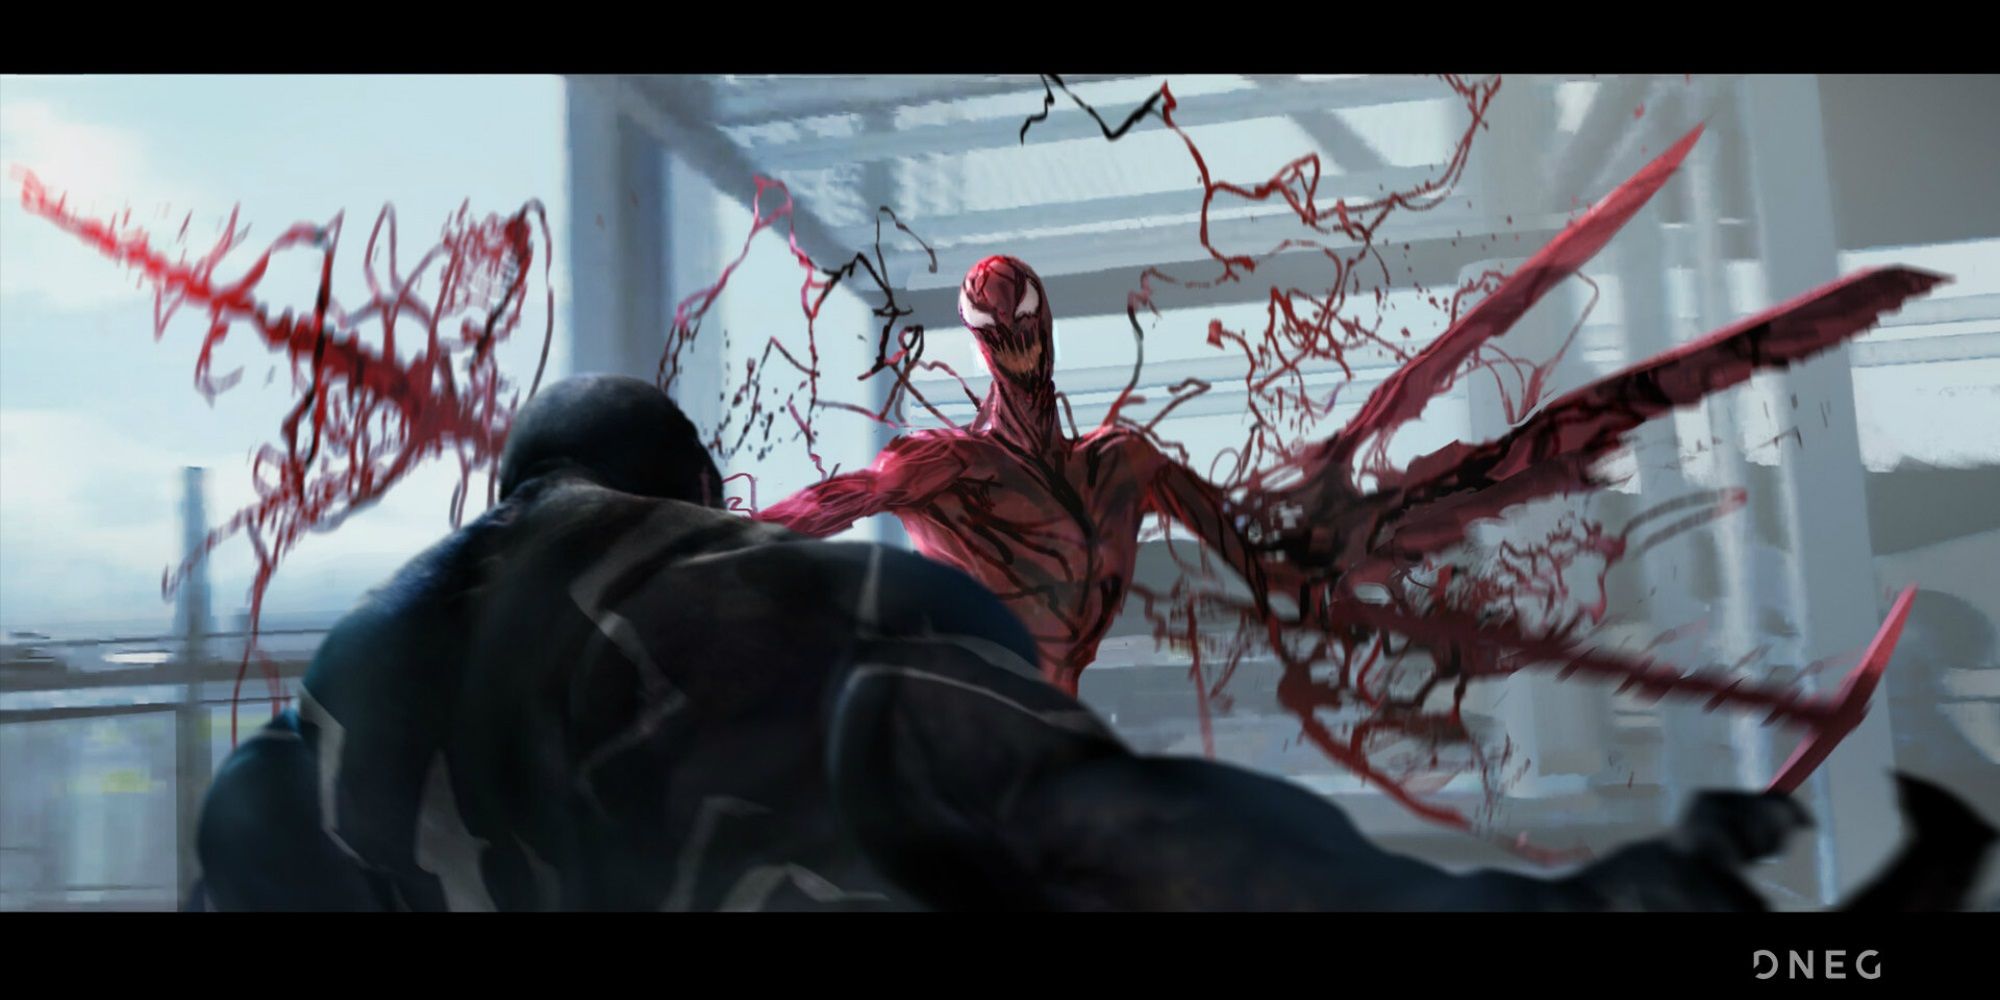 Venom battles Carnage in movie concept art